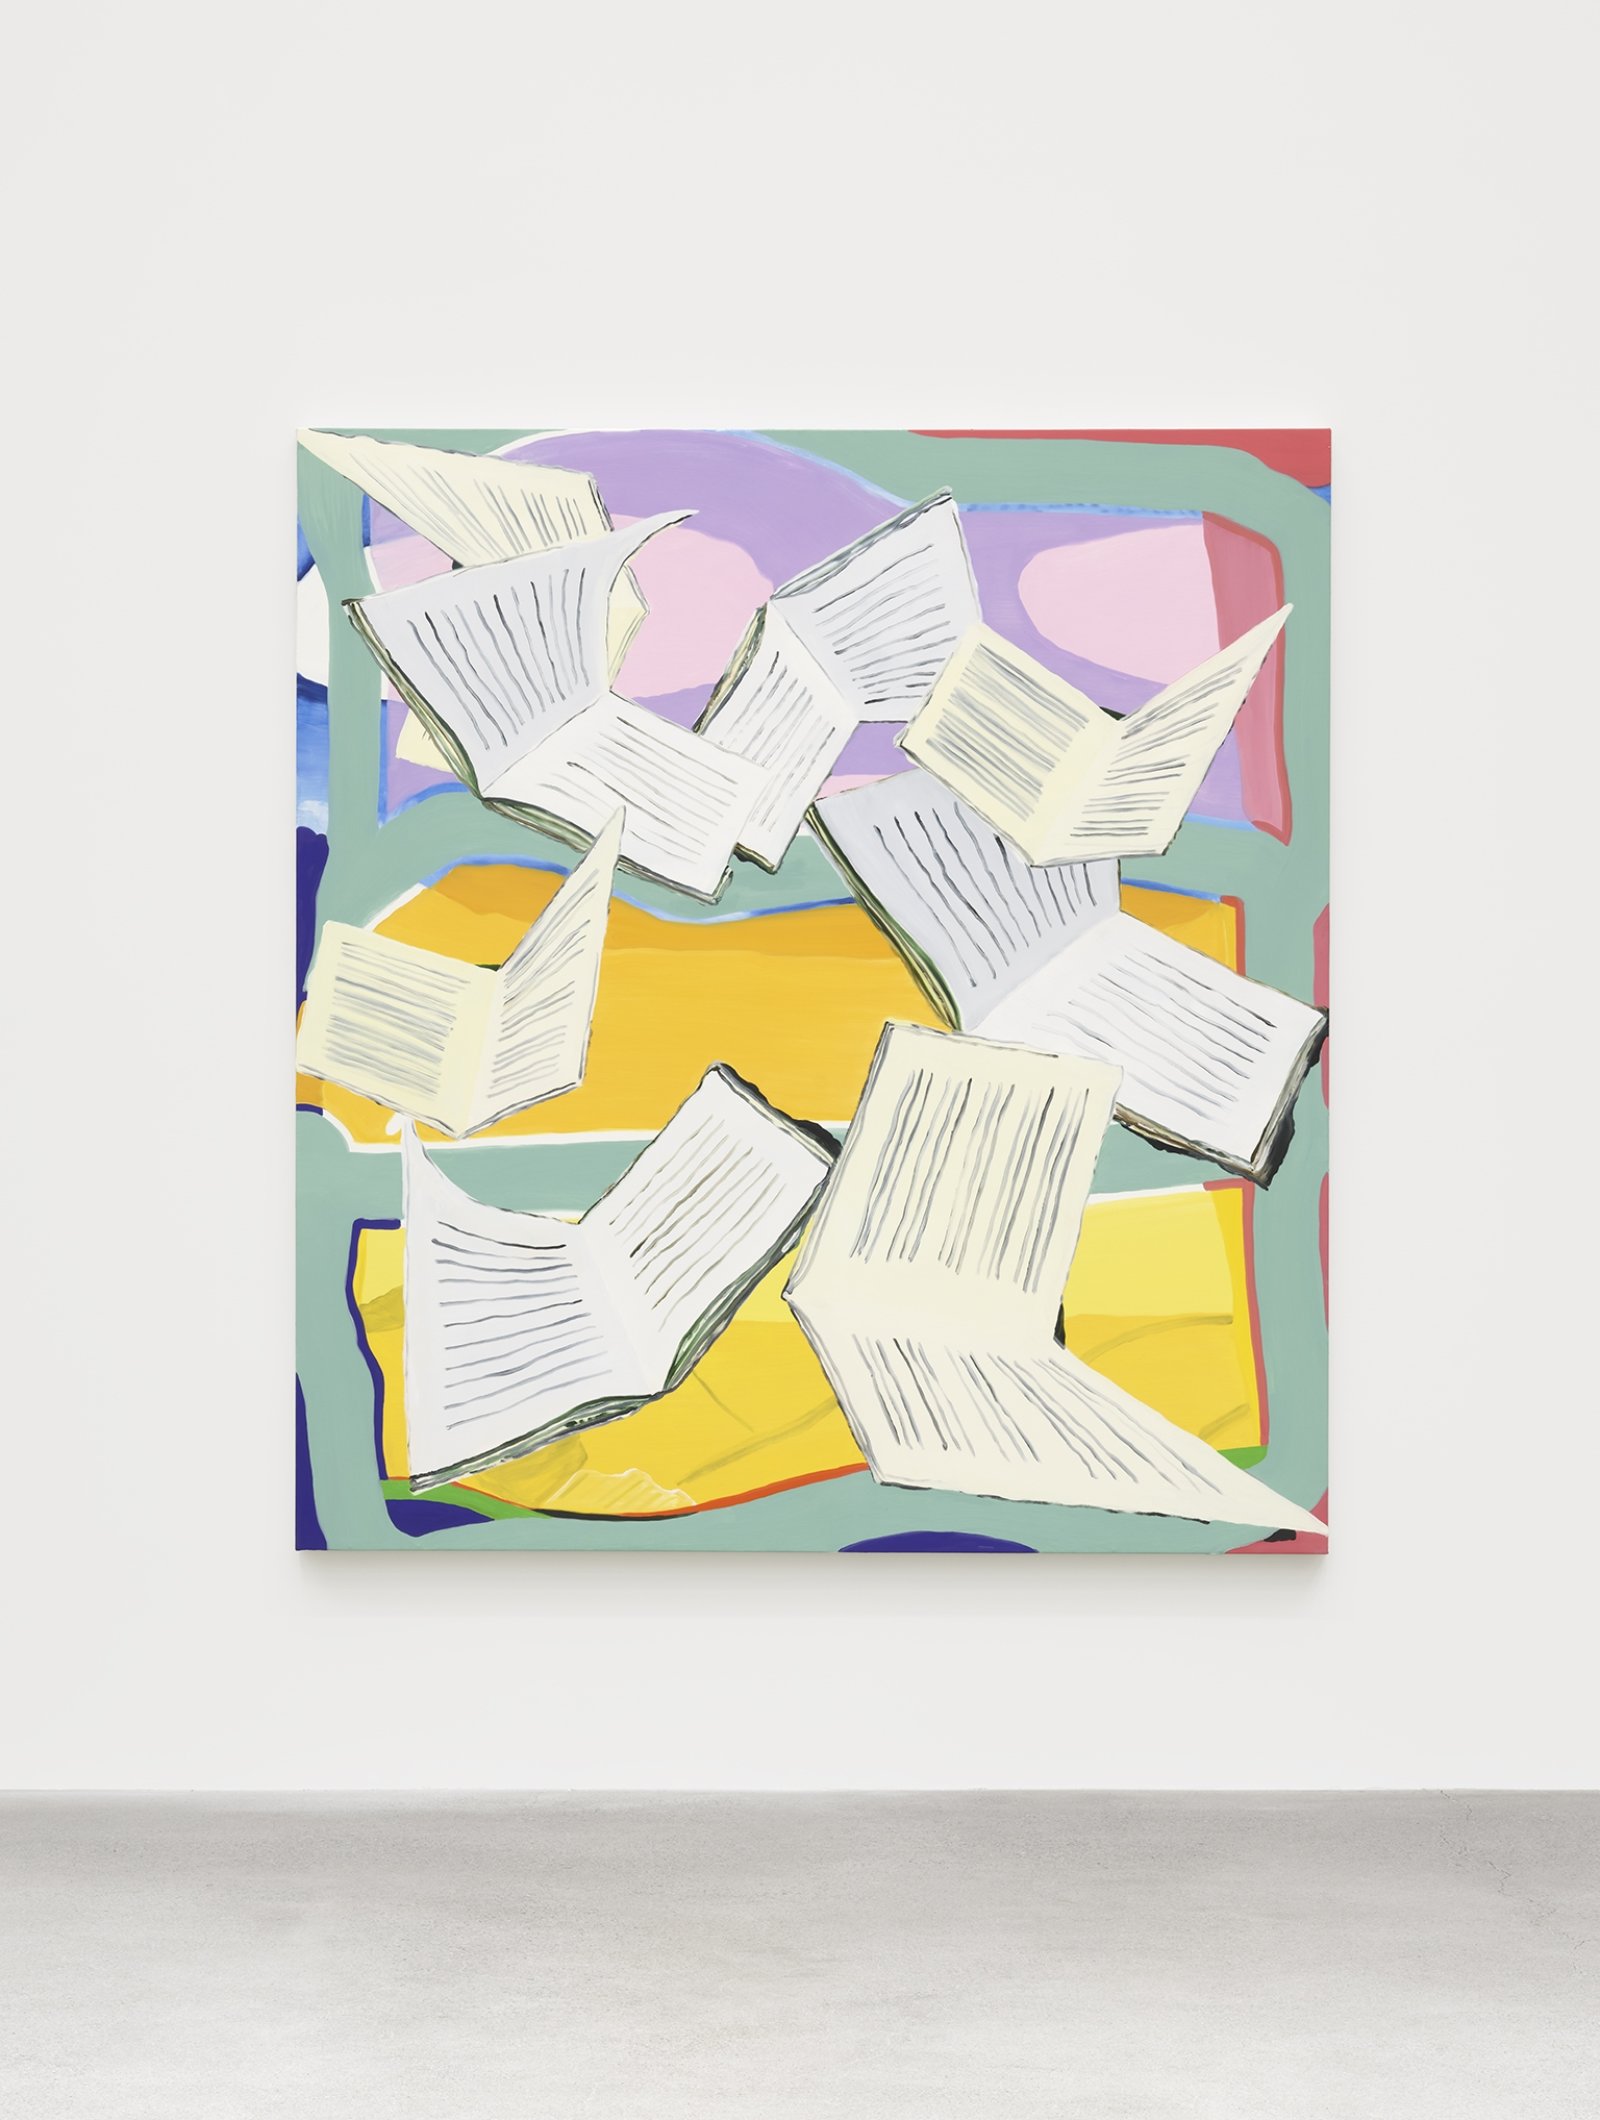 Elizabeth McIntosh, Bookfly, 2019, oil on canvas, 78 x 72 in. (198 x 183 cm)